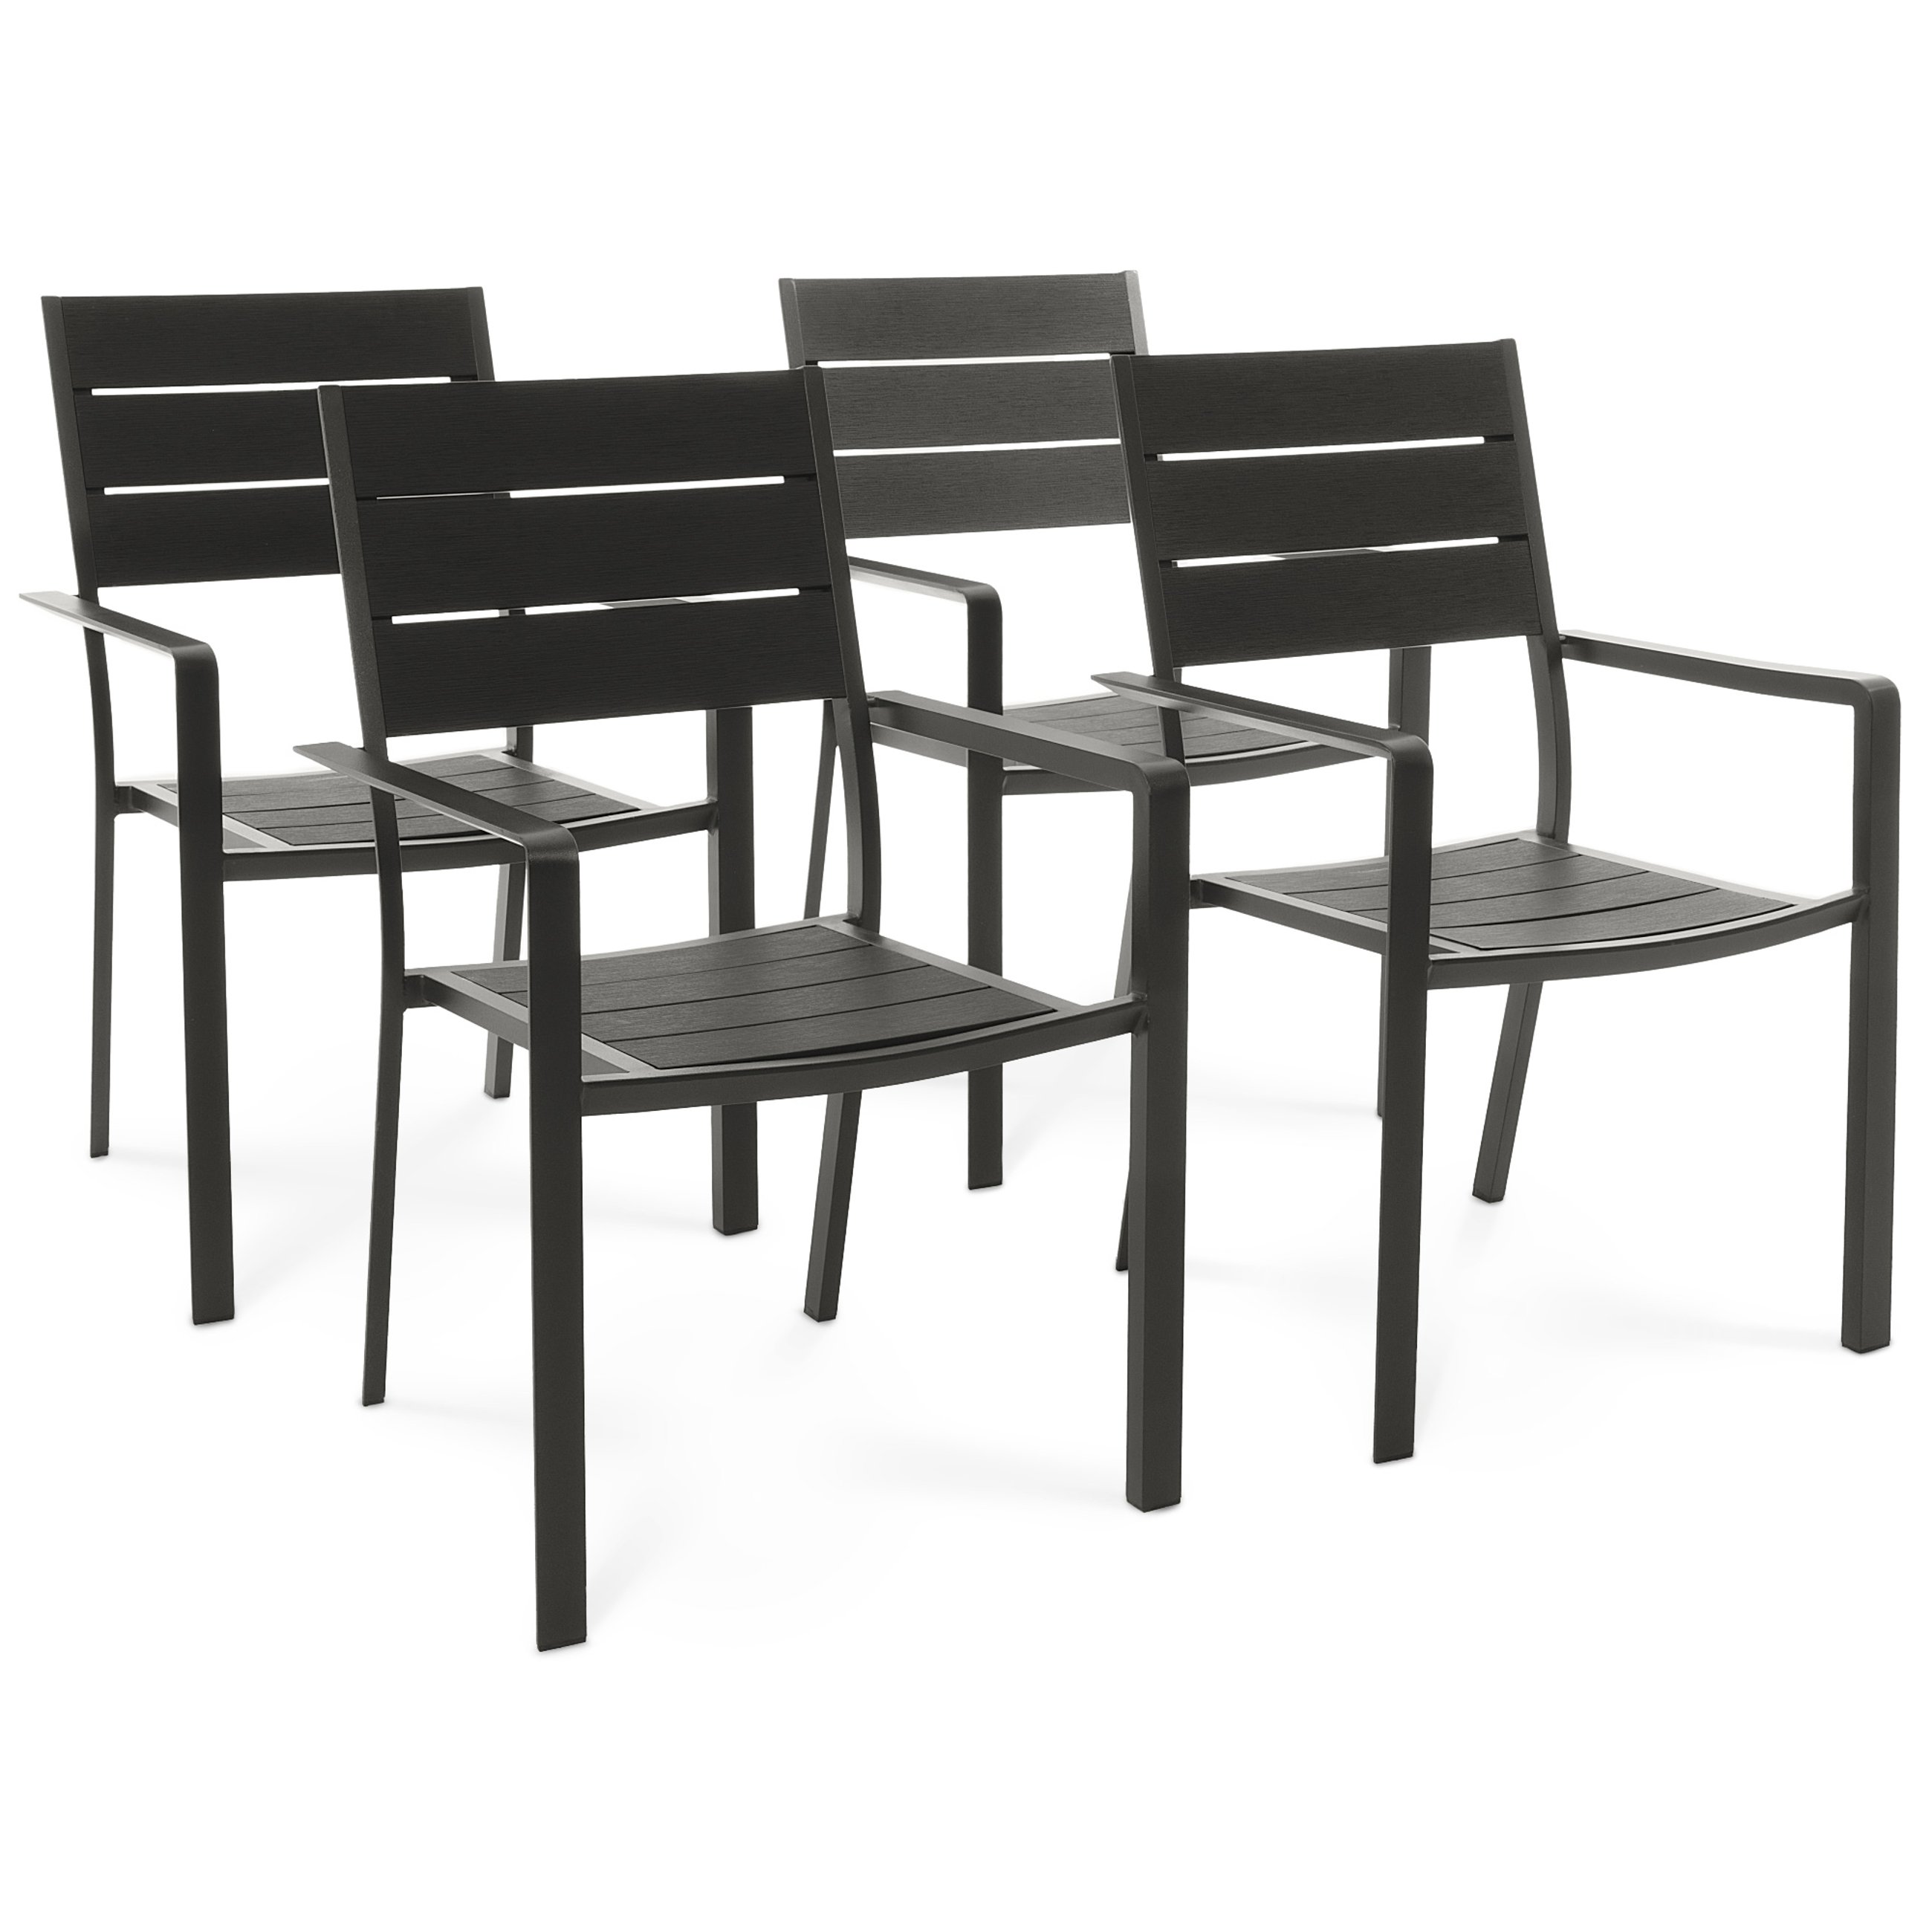 Zestaw 4 krzeseł ogrodowych Teri marki di volio to meble, które łączą nowoczesną estetykę, wygodę użytkowania i trwałość